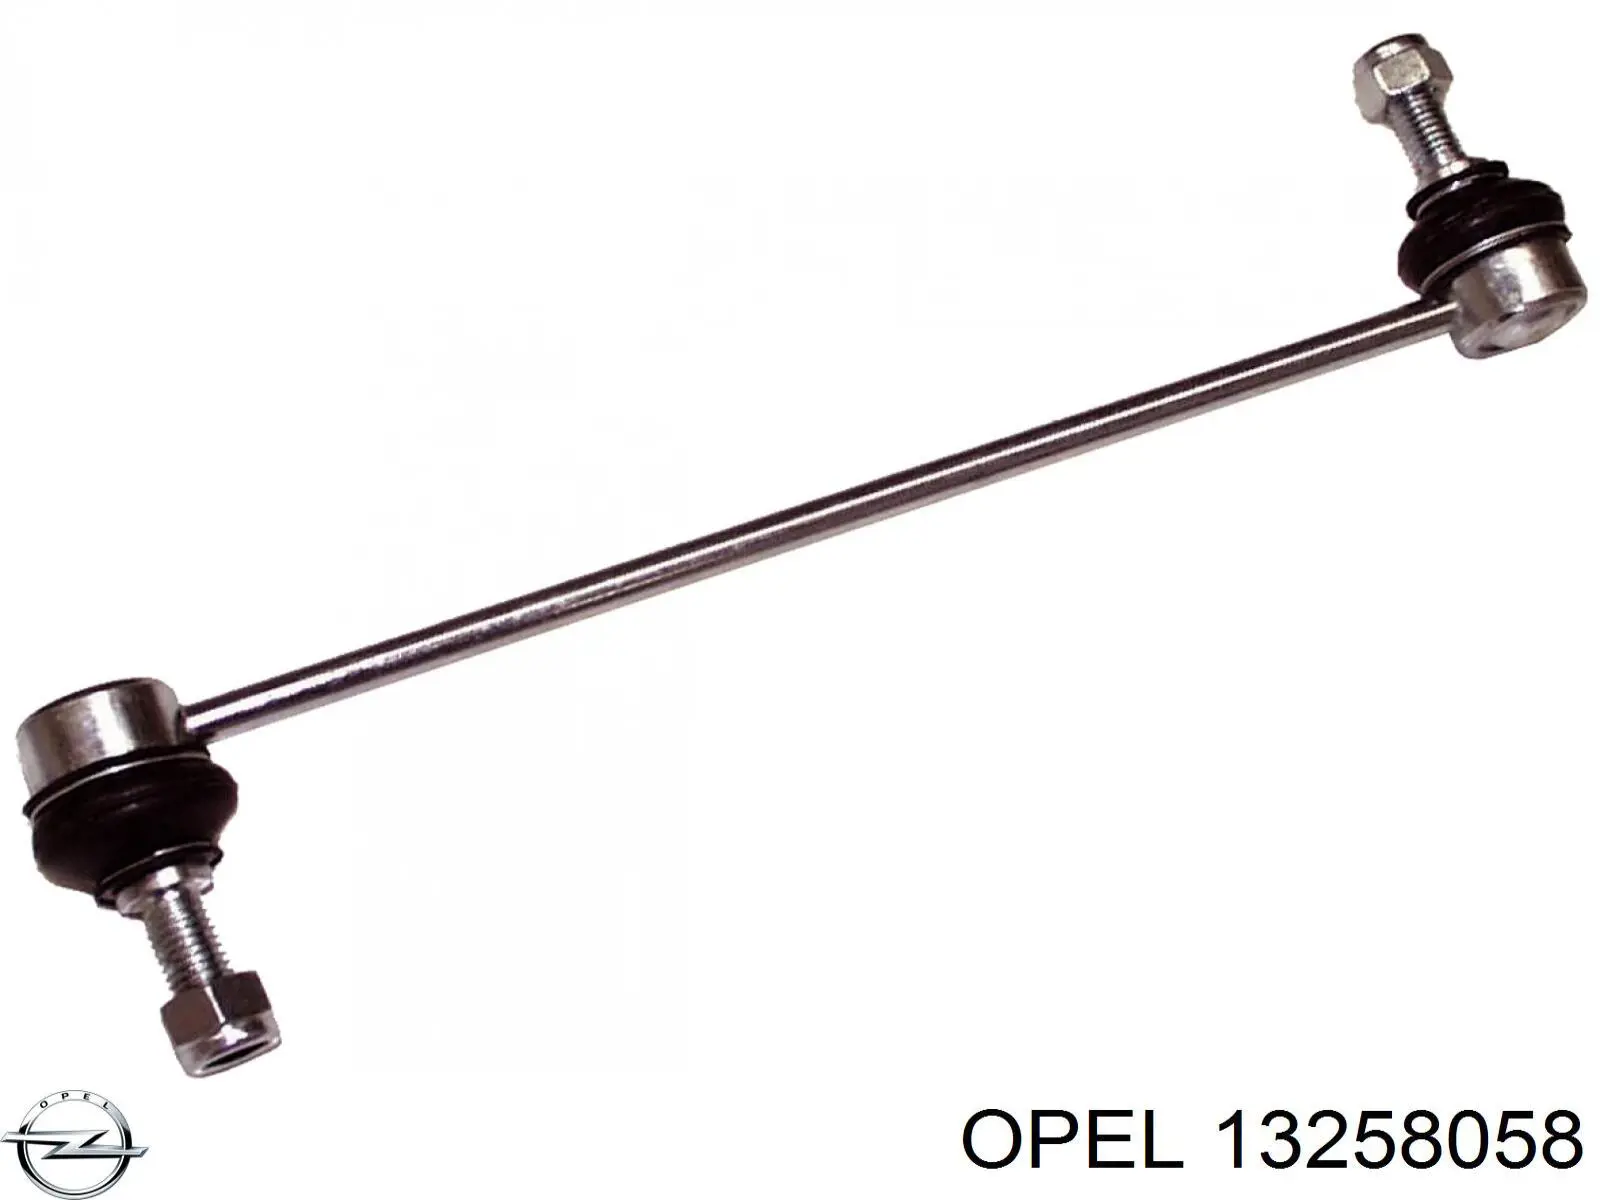 13258058 Opel soporte de barra estabilizadora delantera